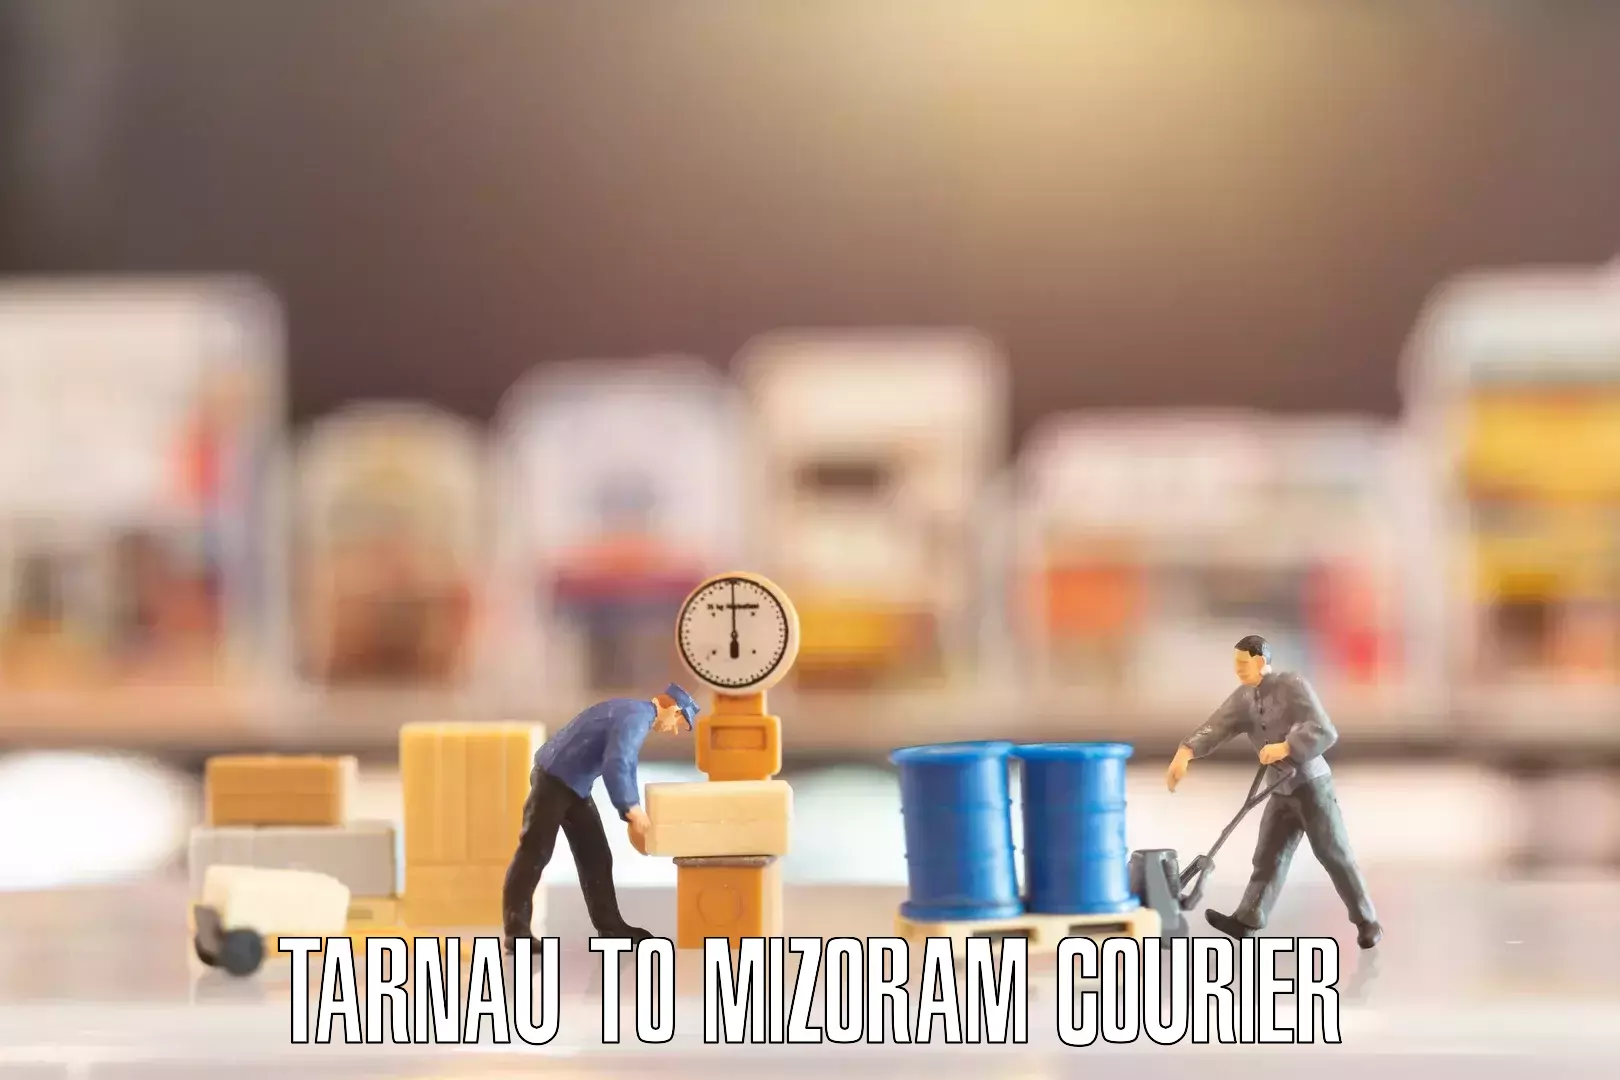 Furniture moving plans Tarnau to Mizoram